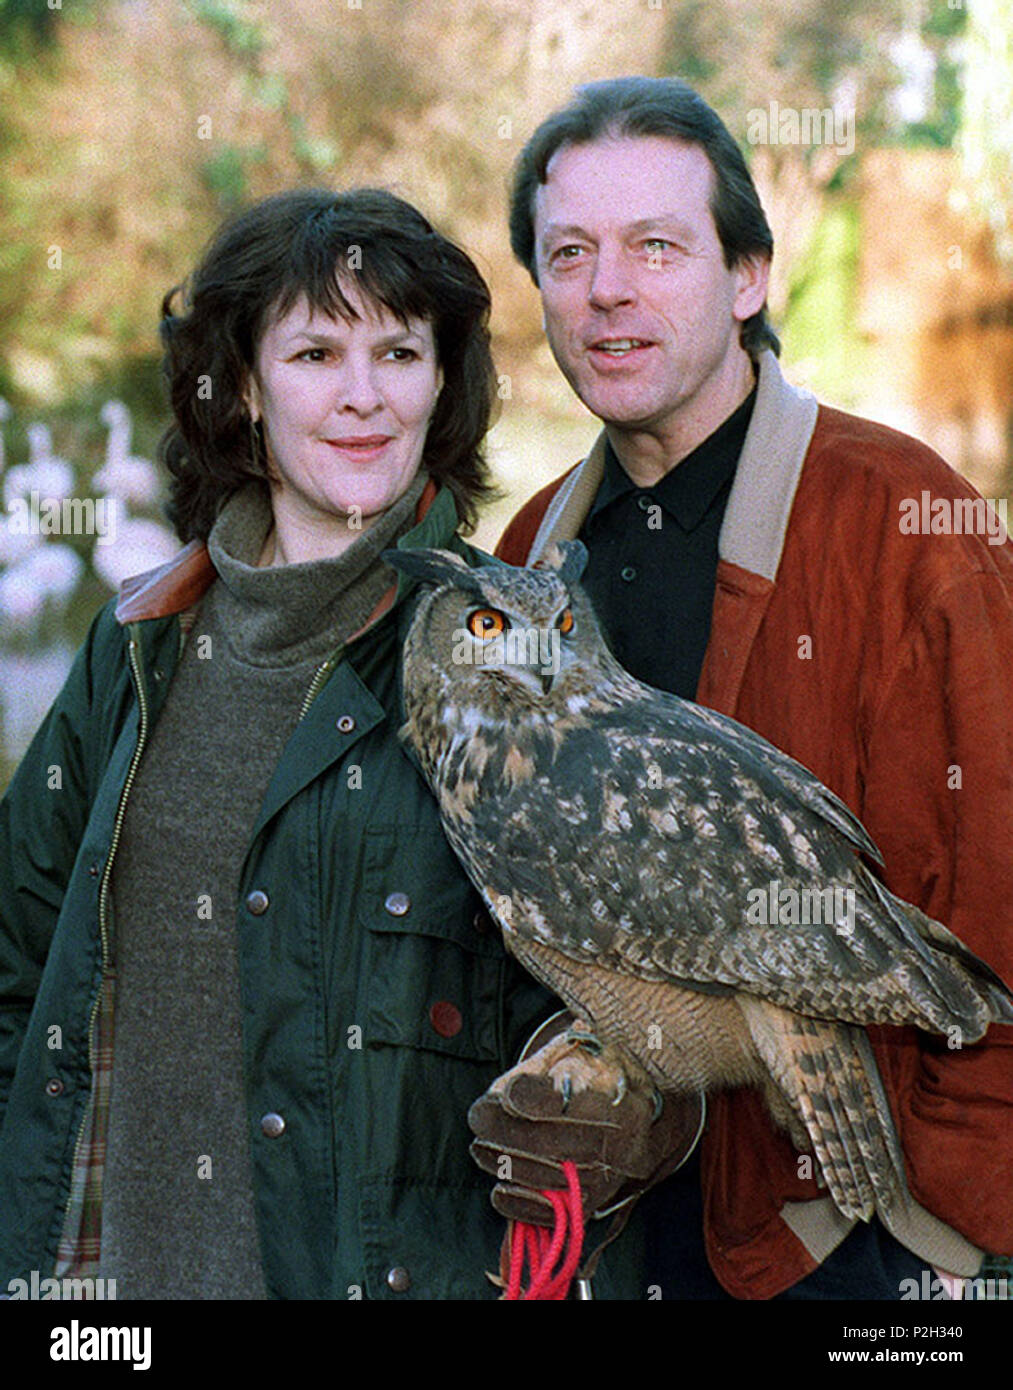 Aktenfoto vom 05/01/95 von Leslie Grantham als Mick Raynor und Frances Tomelty als Commander Eleanor Stone, einer Adlereule Max. Grantham, der in Ostenders „Dirty“ Den Watts gespielt hat, ist im Alter von 71 Jahren gestorben. Stockfoto